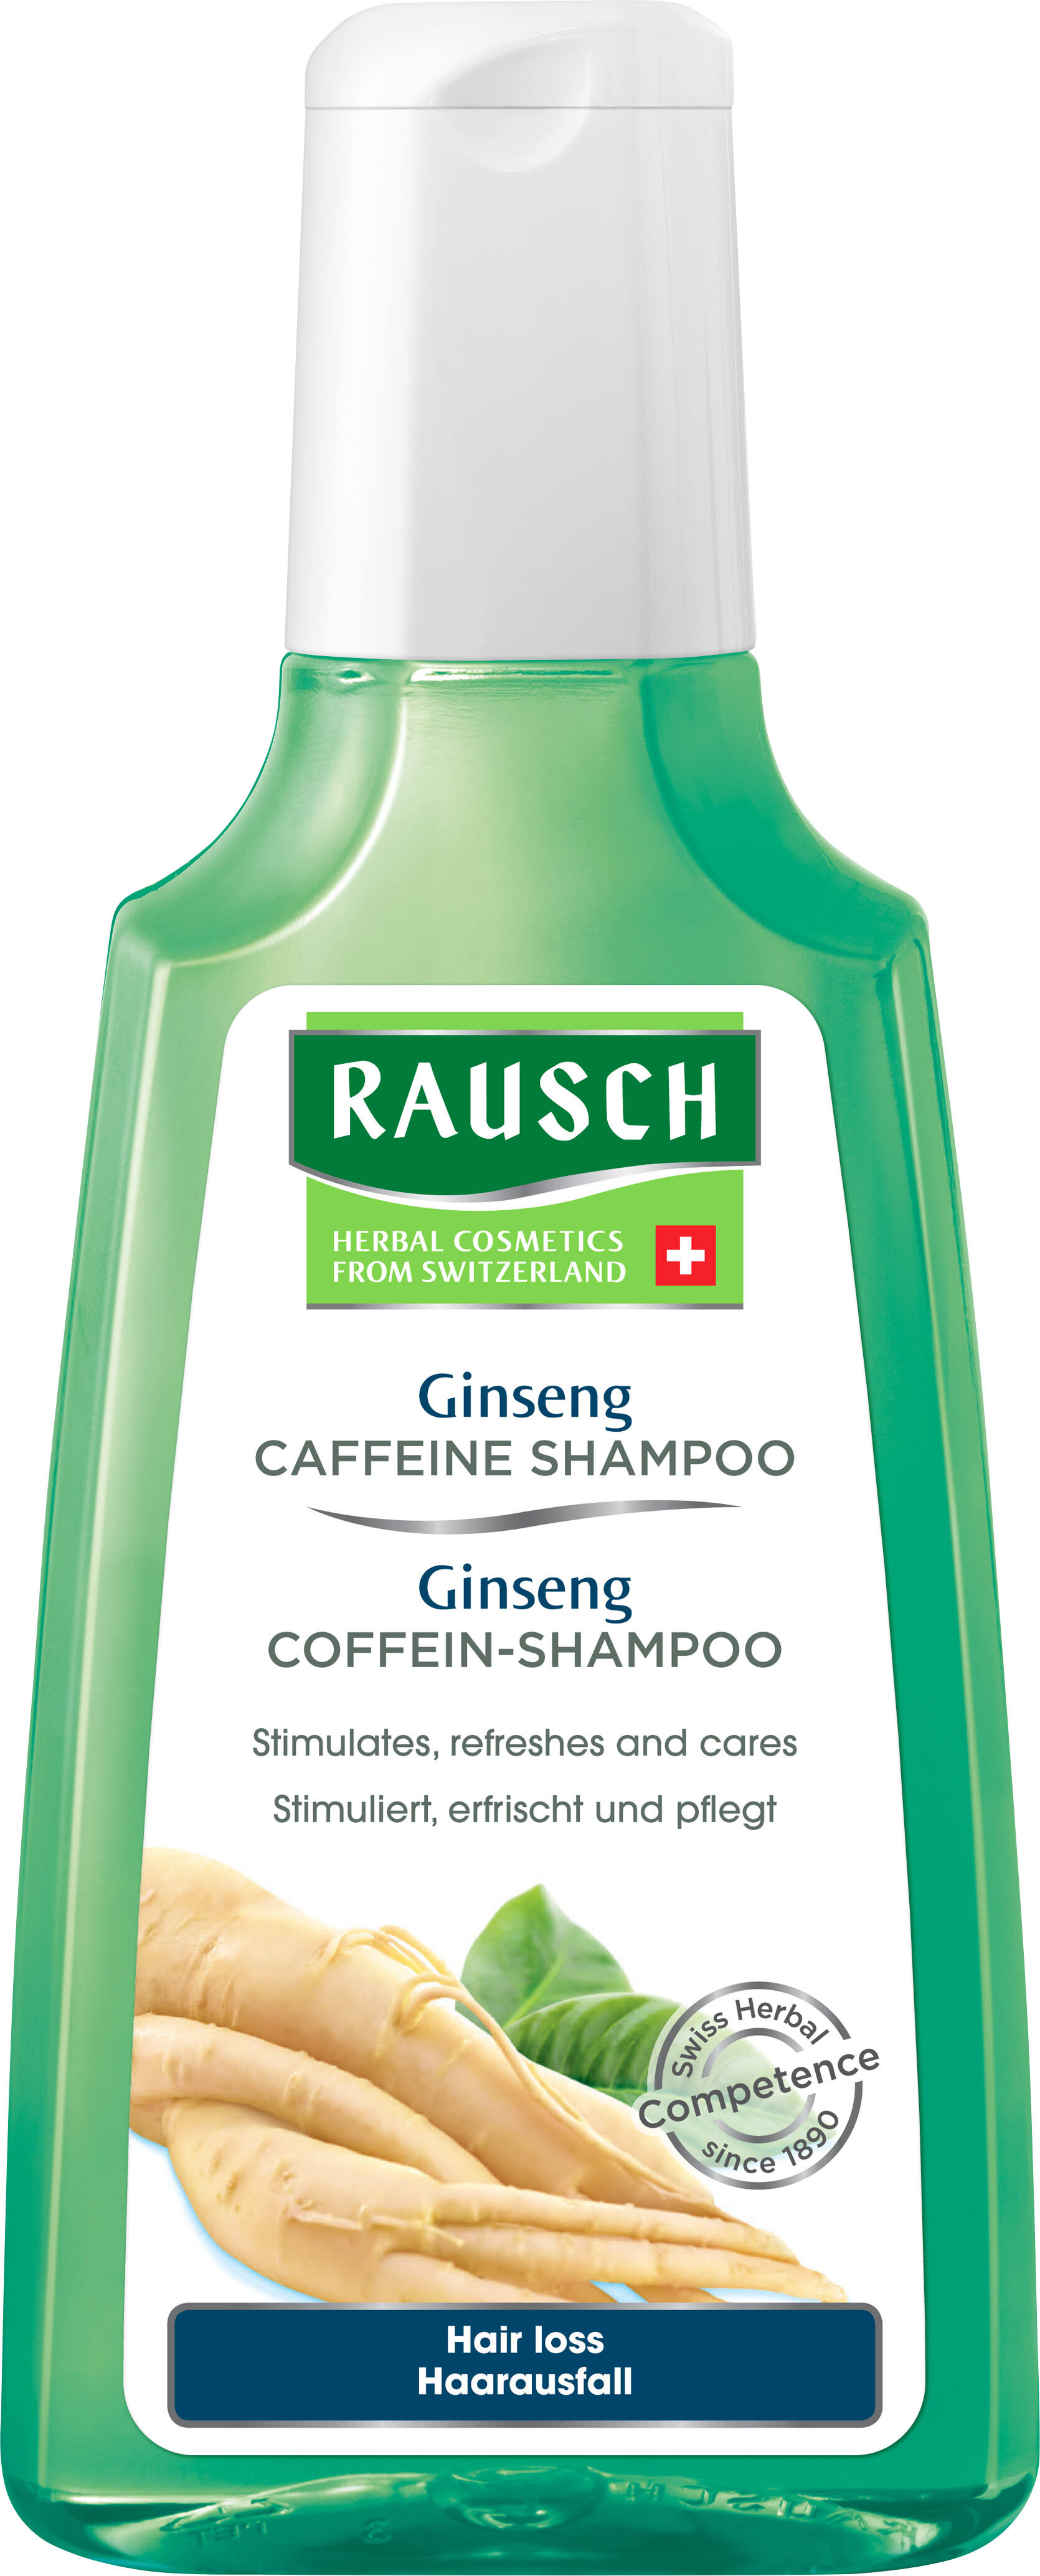 Rausch Ginseng Caffeine Shampoo 200ml